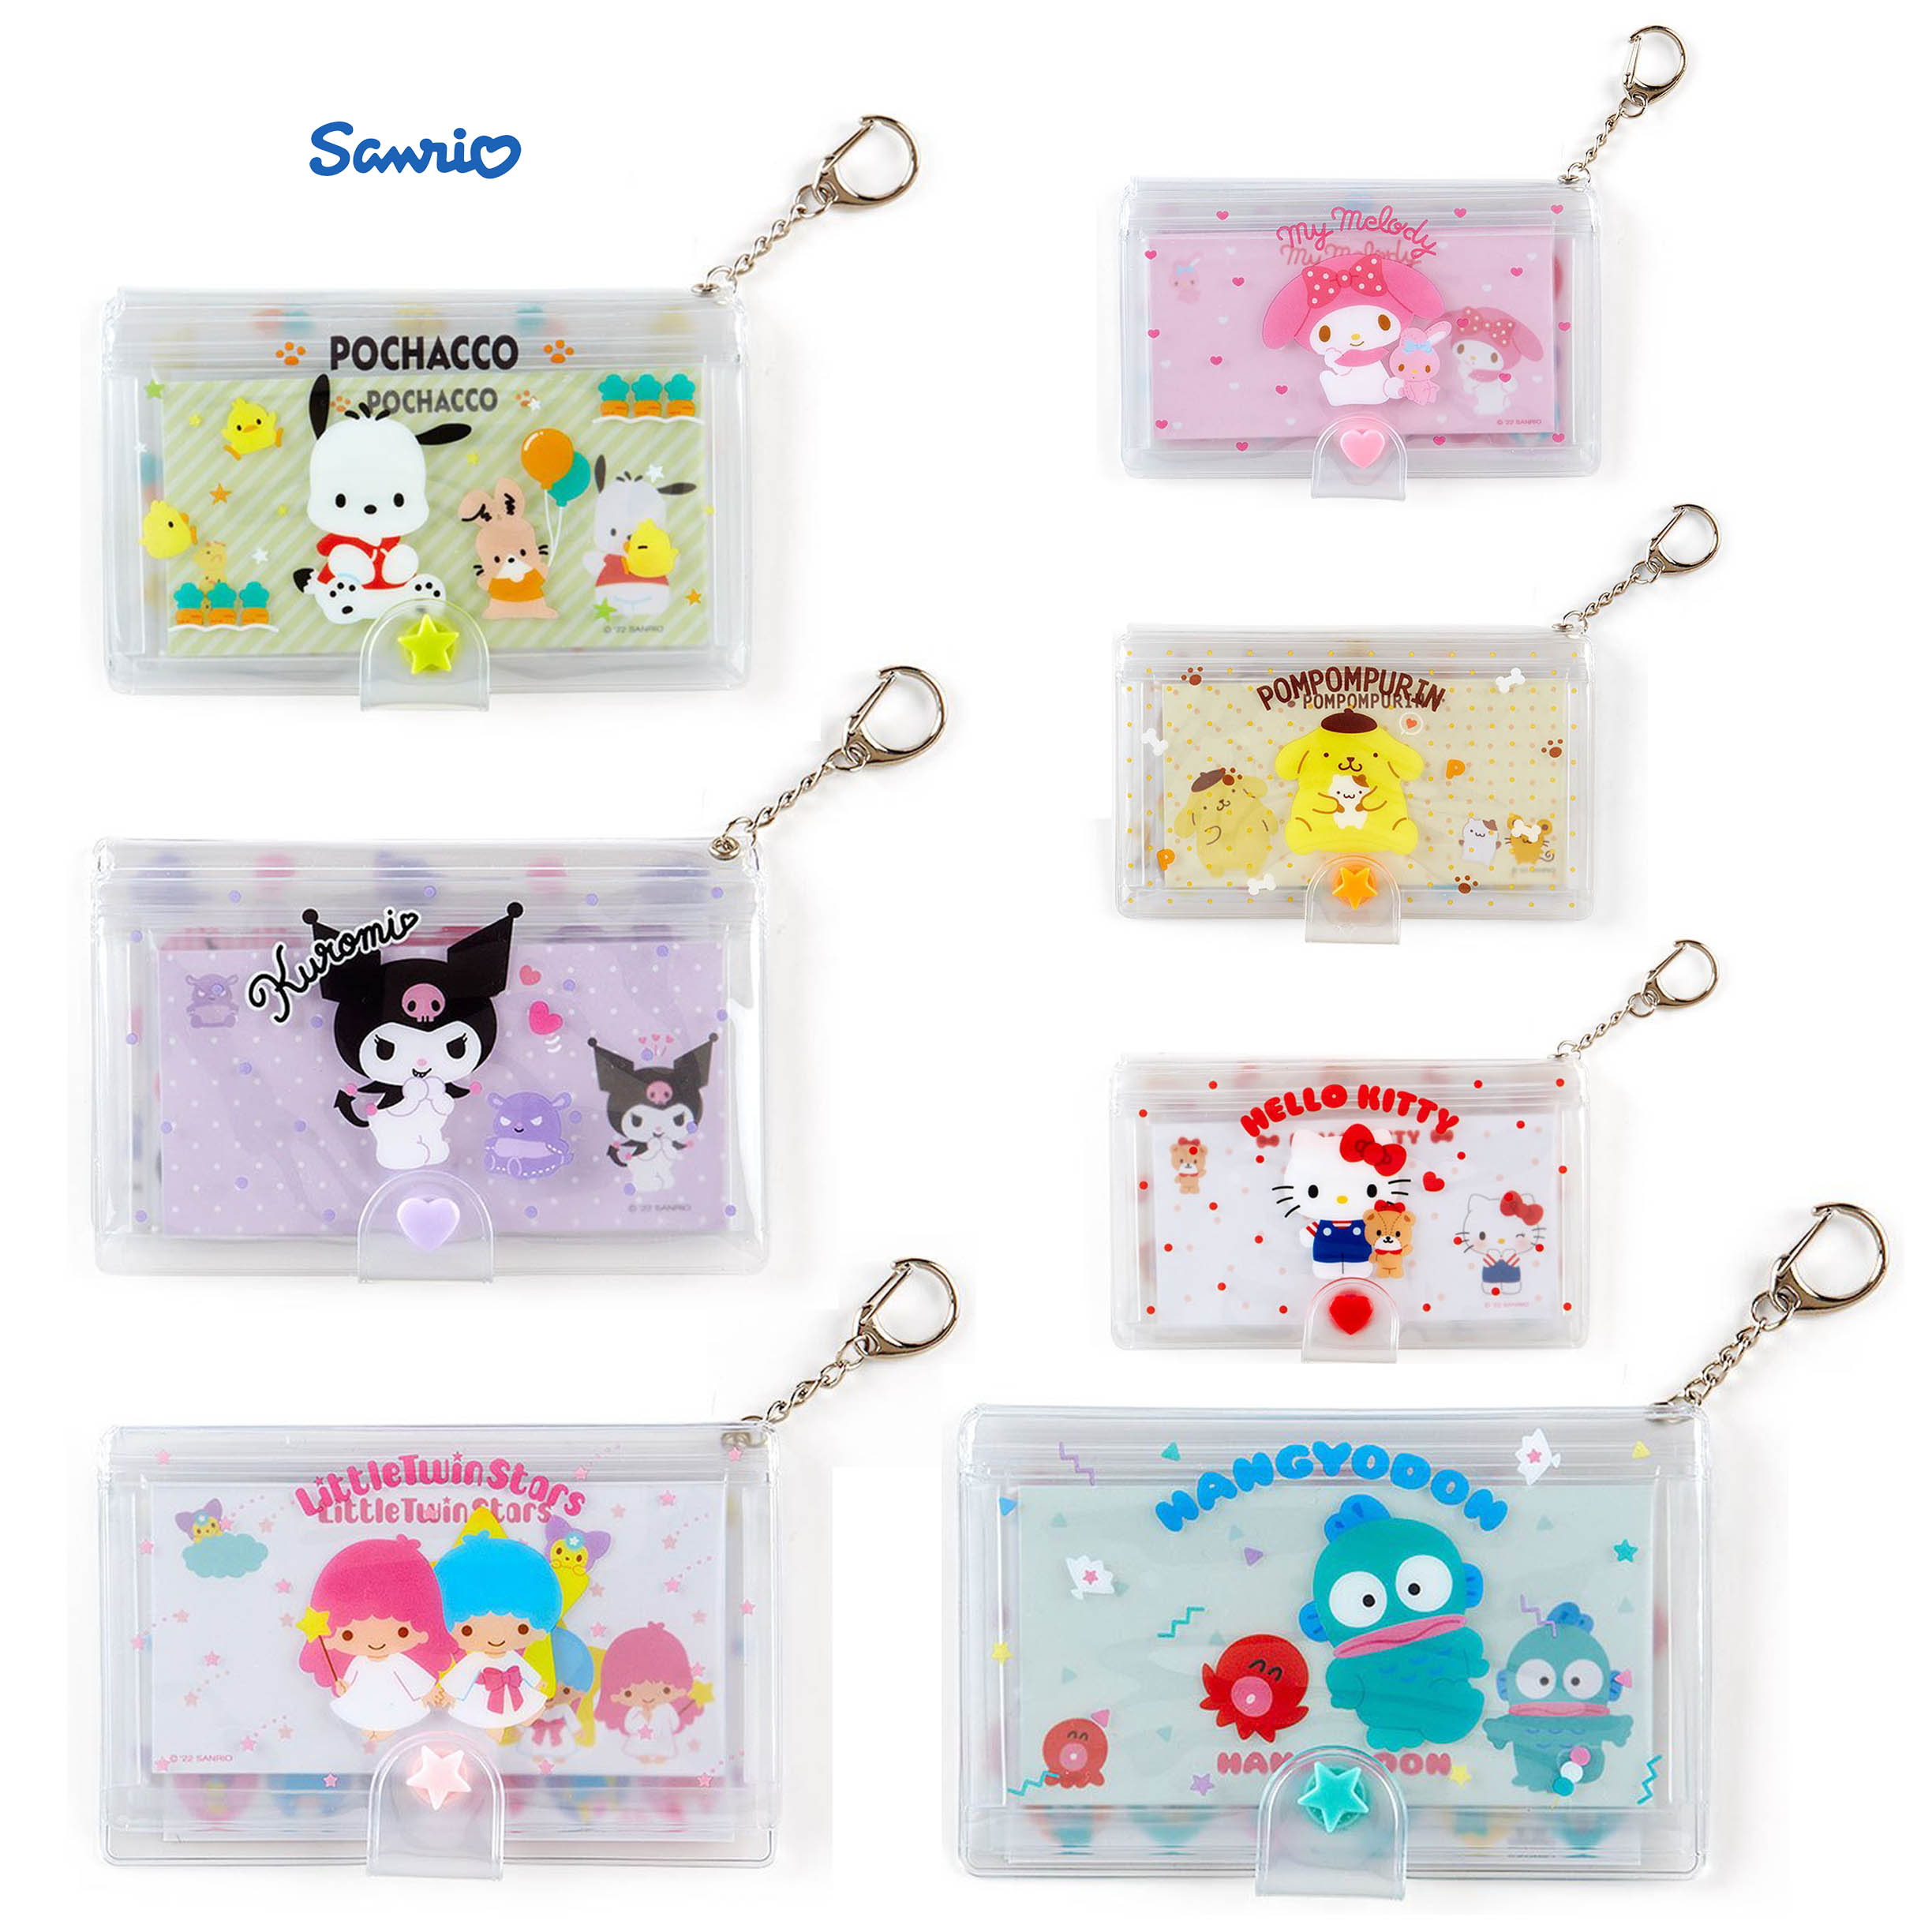 袋裝便條紙 附扣式鍊條-三麗鷗 Sanrio 日本進口正版授權